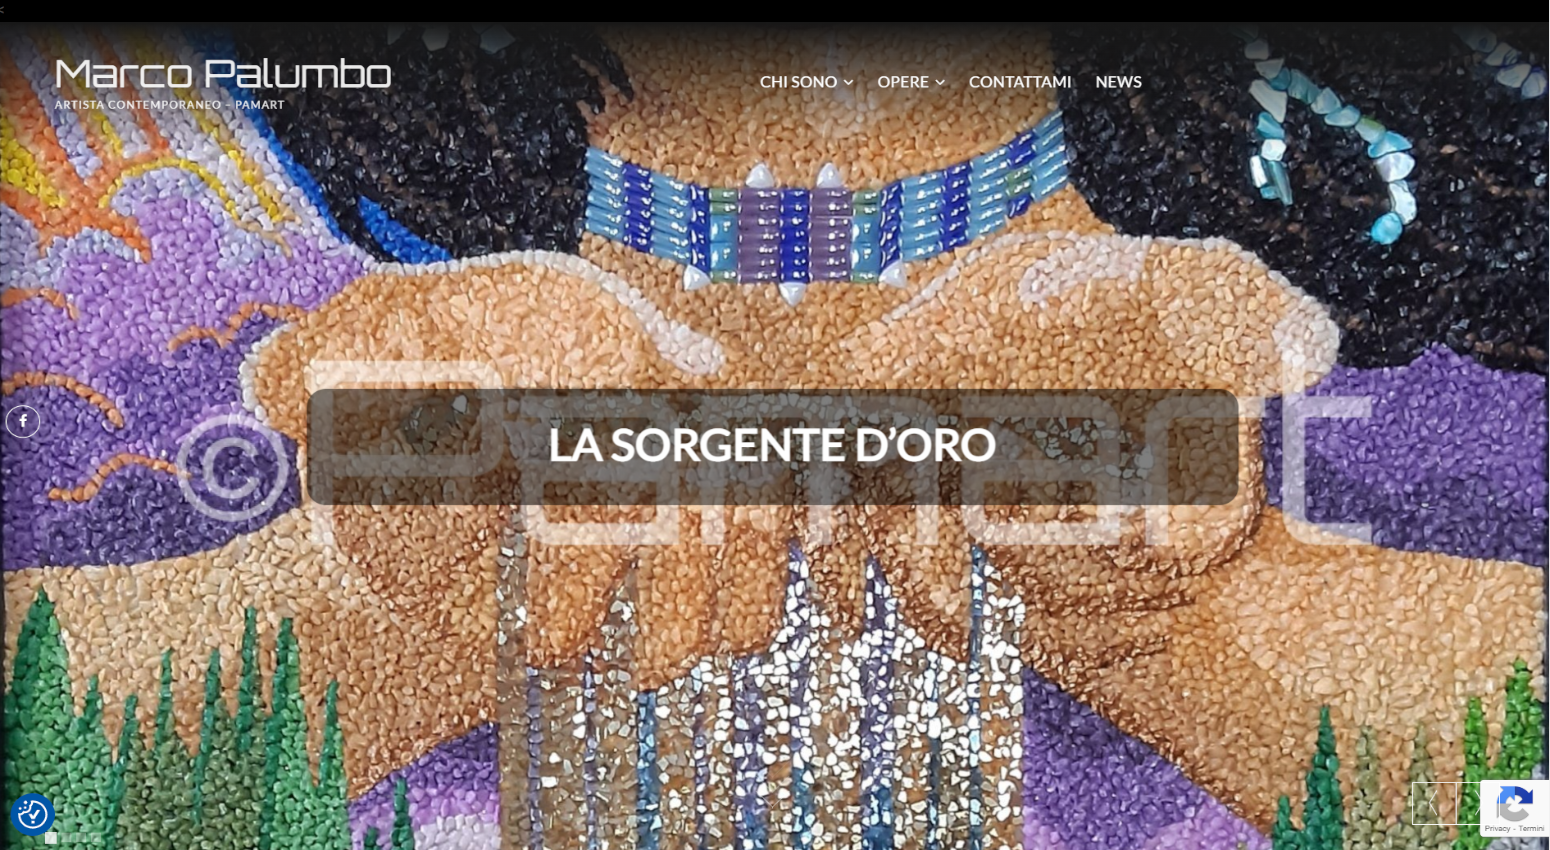 Sito web dell'artista contemporanea Marco Palumbo dedicato alla promozione dell'arte e alla vendita di quadri online